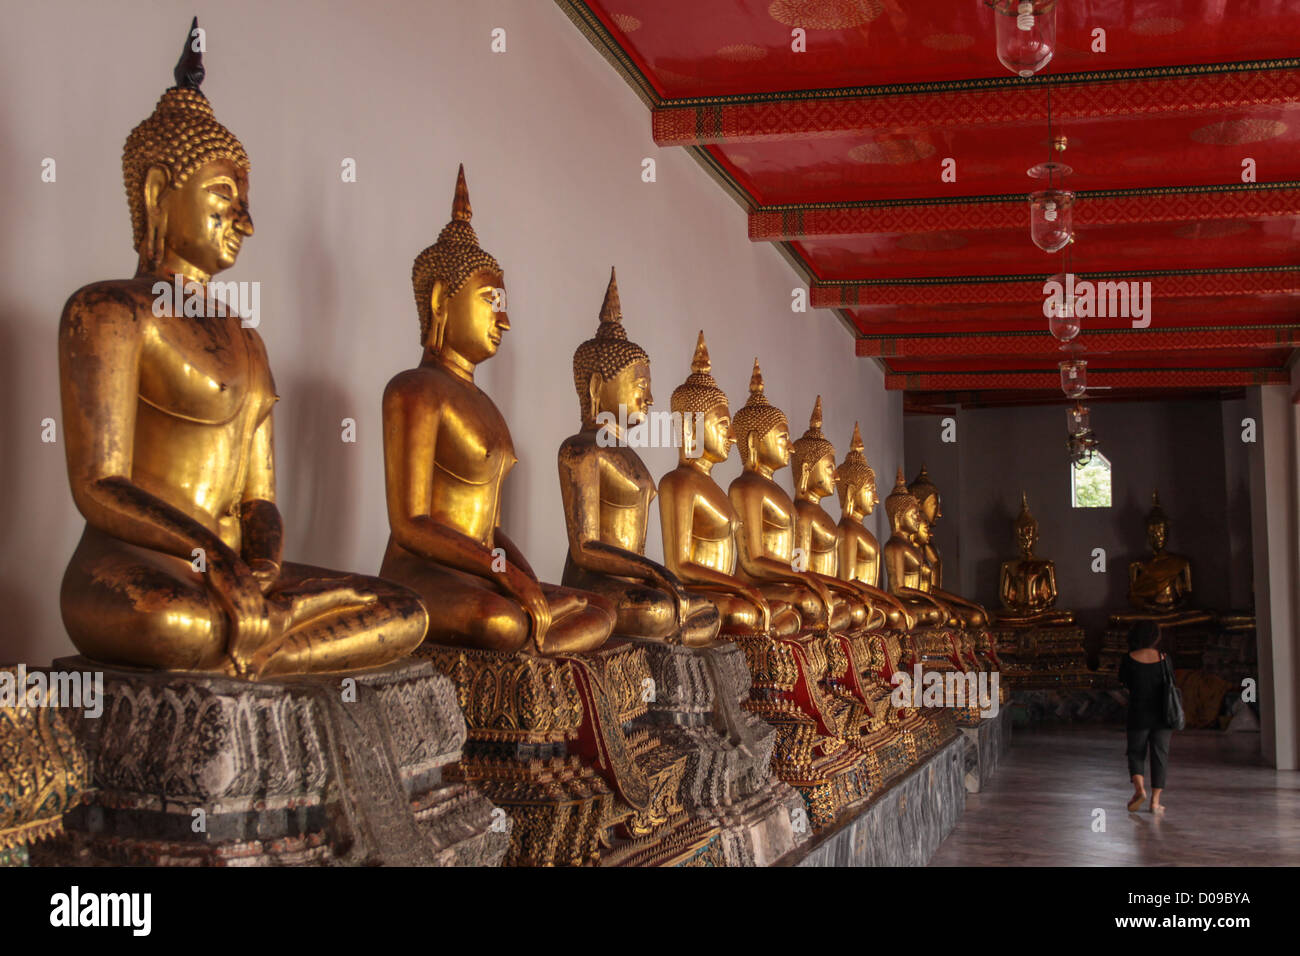 Estatuas de Buda se alinearon en el interior del templo de Wat Pho, Bangkok, Tailandia ASIA Foto de stock